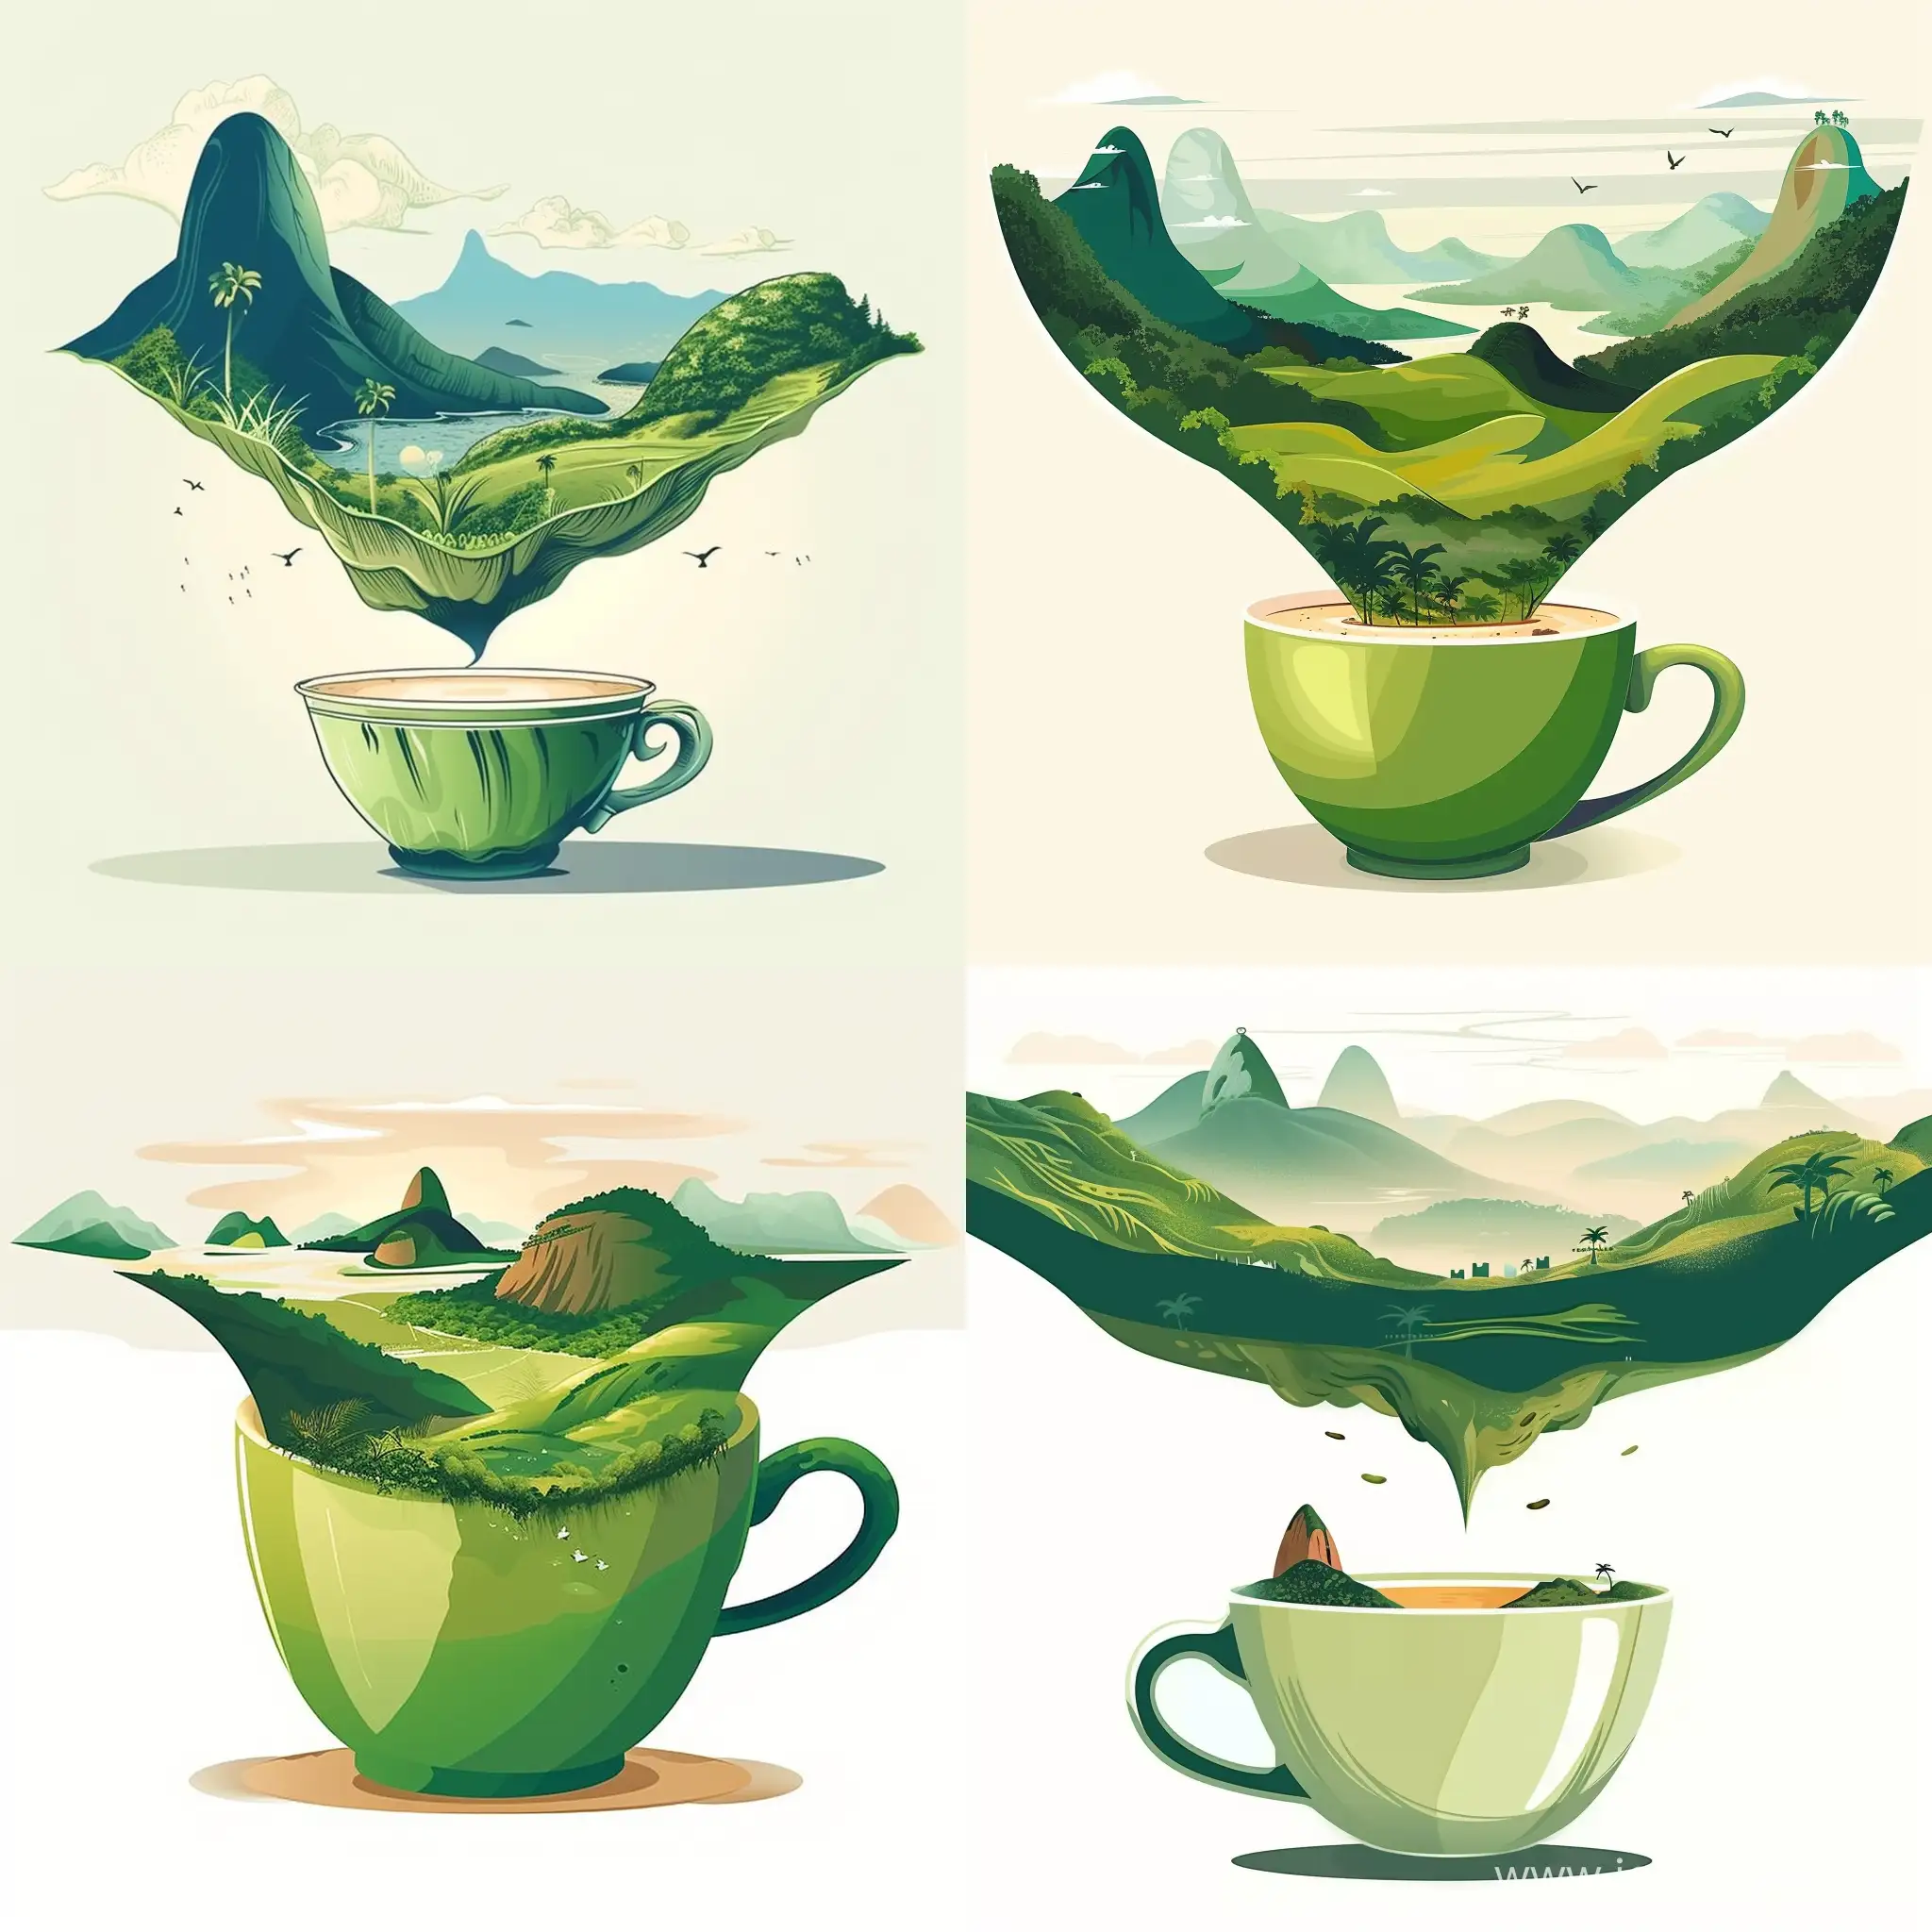 Иллюстрация чашка кофе, а вверху пейзаж Бразилии - serf https://i.pinimg.com/564x/5d/ff/d7/5dffd7747c3db58b0063abcf7f3c917e.jpg